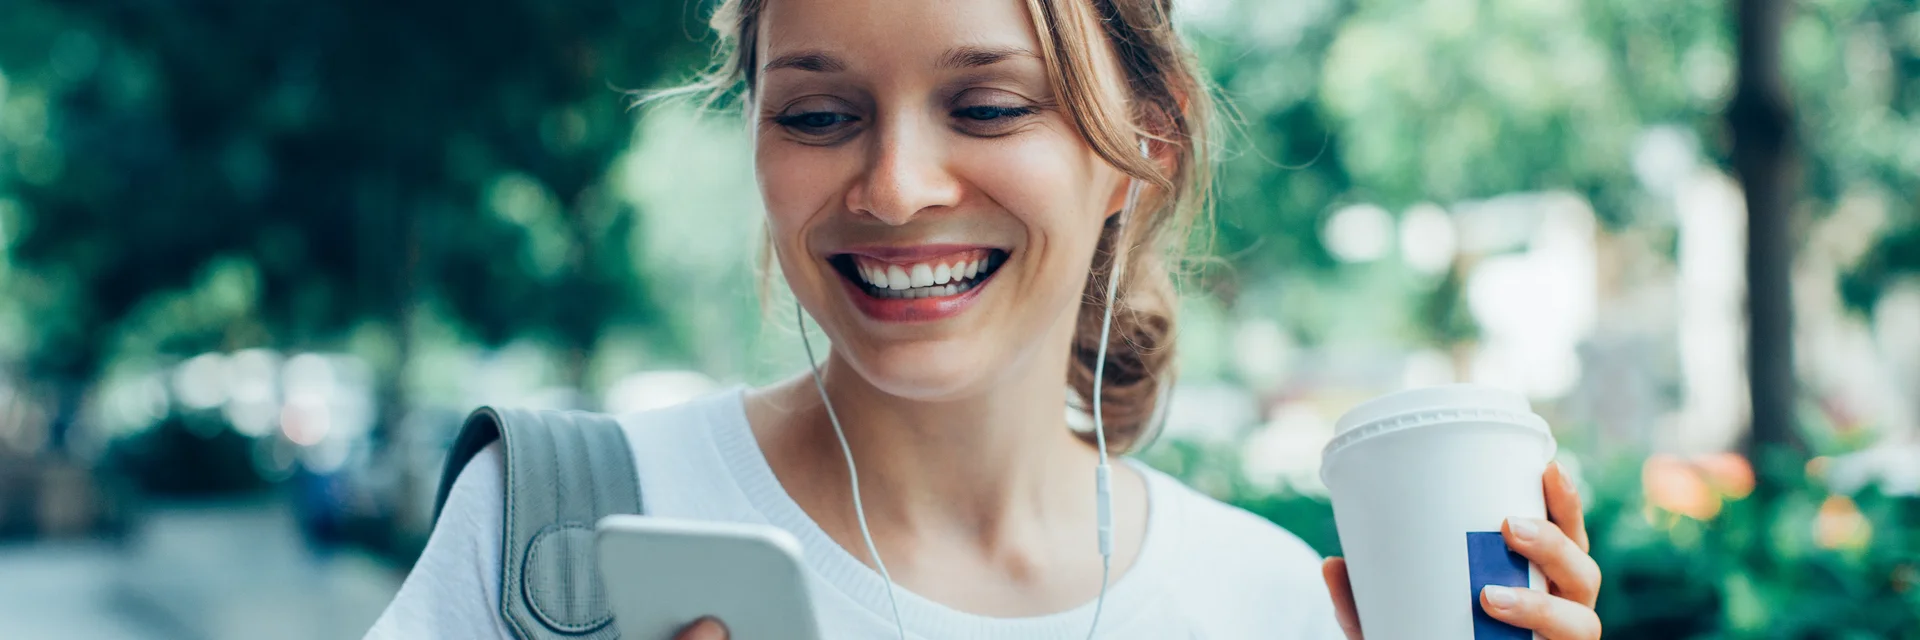 Eine Frau geht durch einen Park und schaut lächelnd auf ihr Handy in der rechten Hand. In der linken Hand hält sie einen Kaffee-Becher